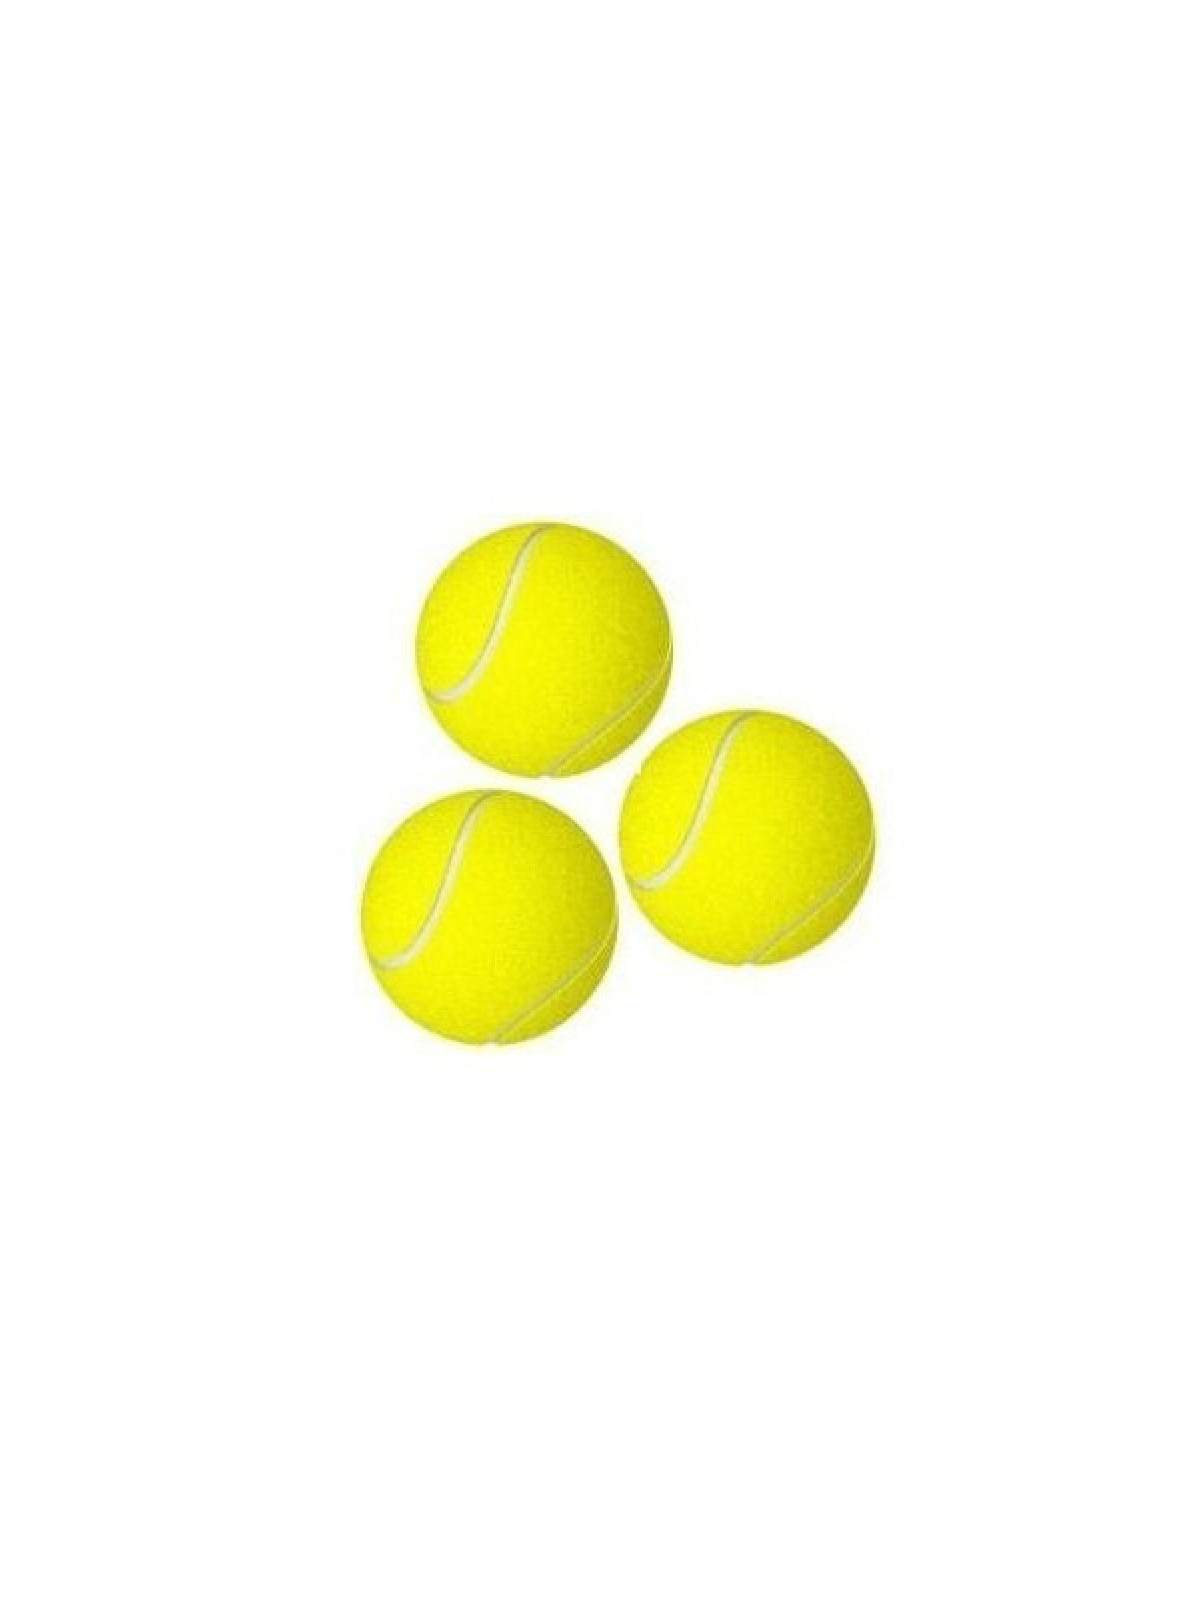 55-150 Balles de tennis personnalisé